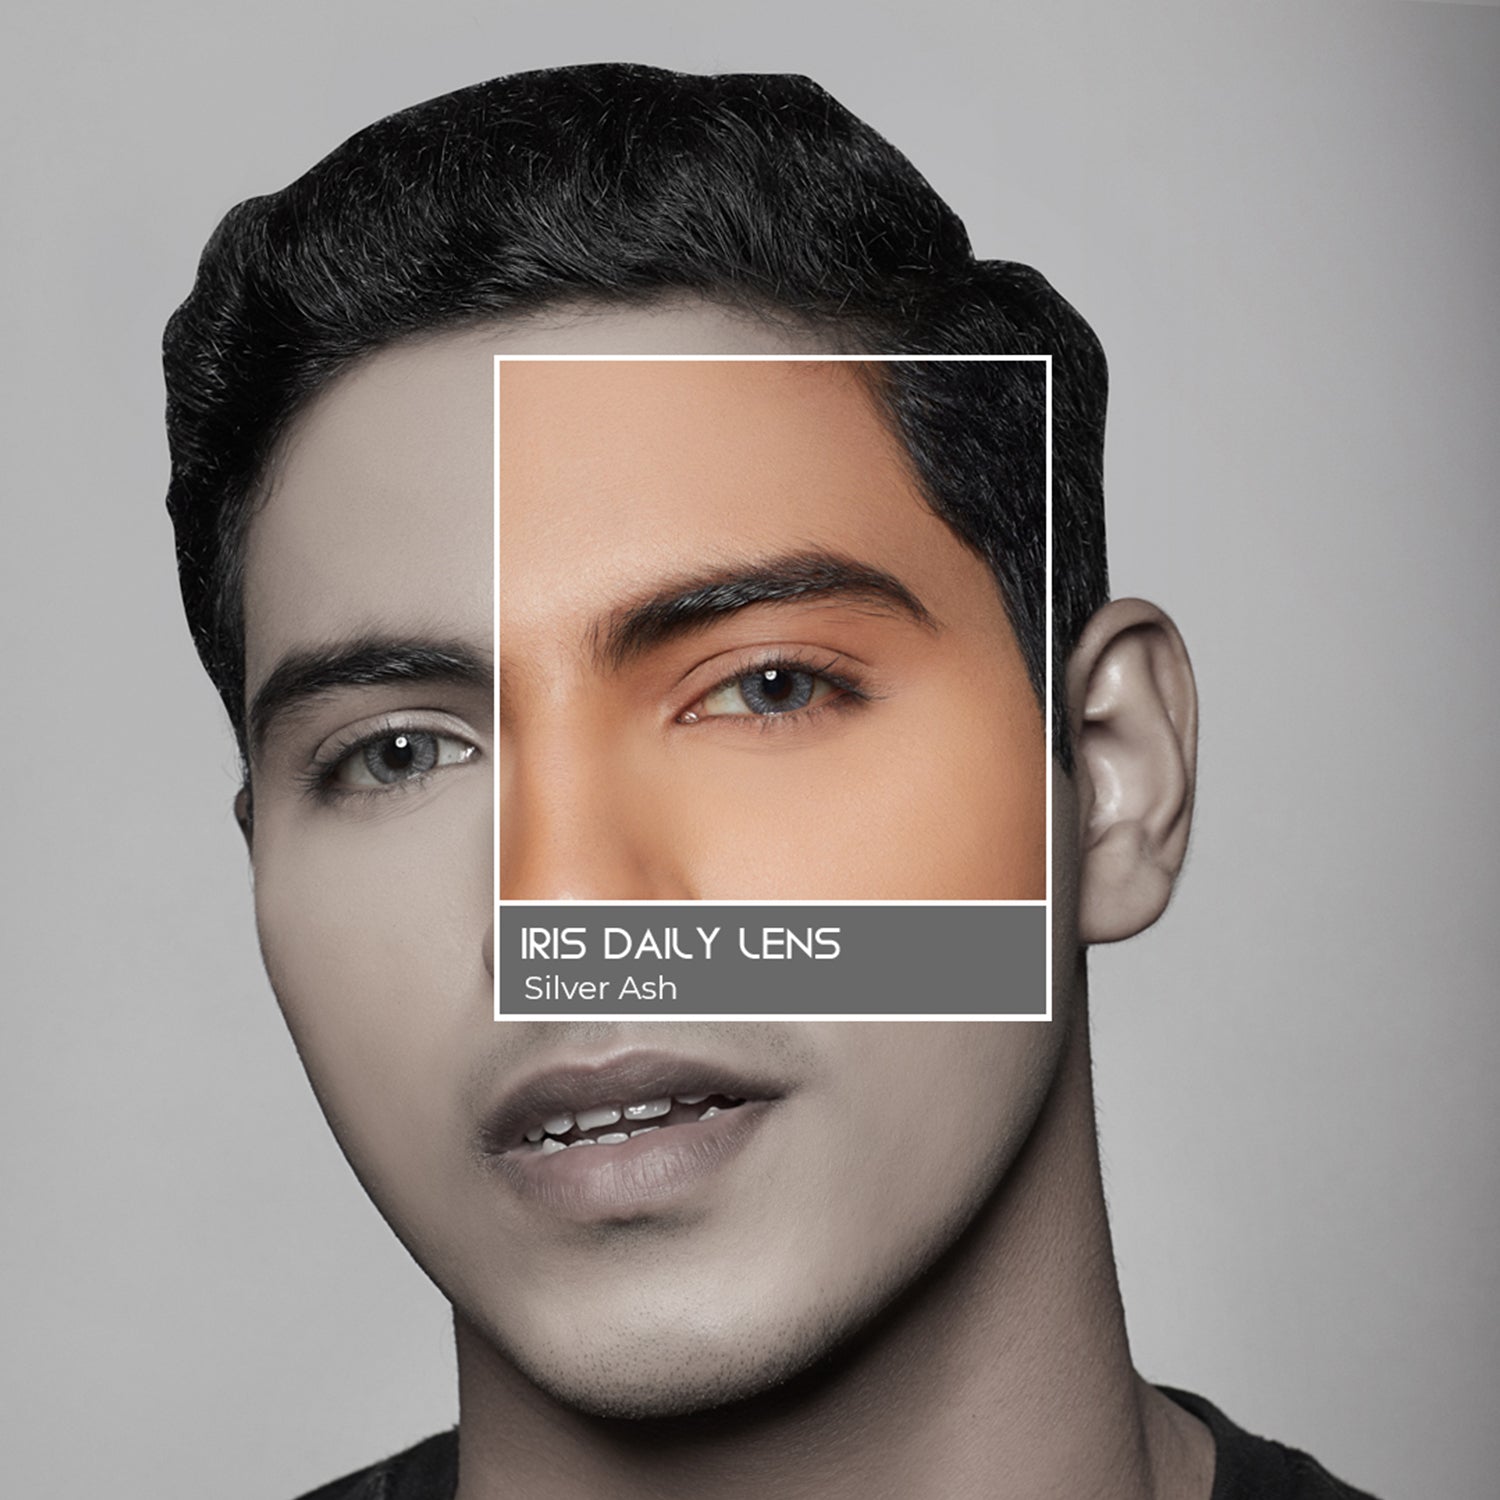 PAC Cosmetics IRIS Premium Contact Lenses (1 Pairs) #Color_Silver Ash